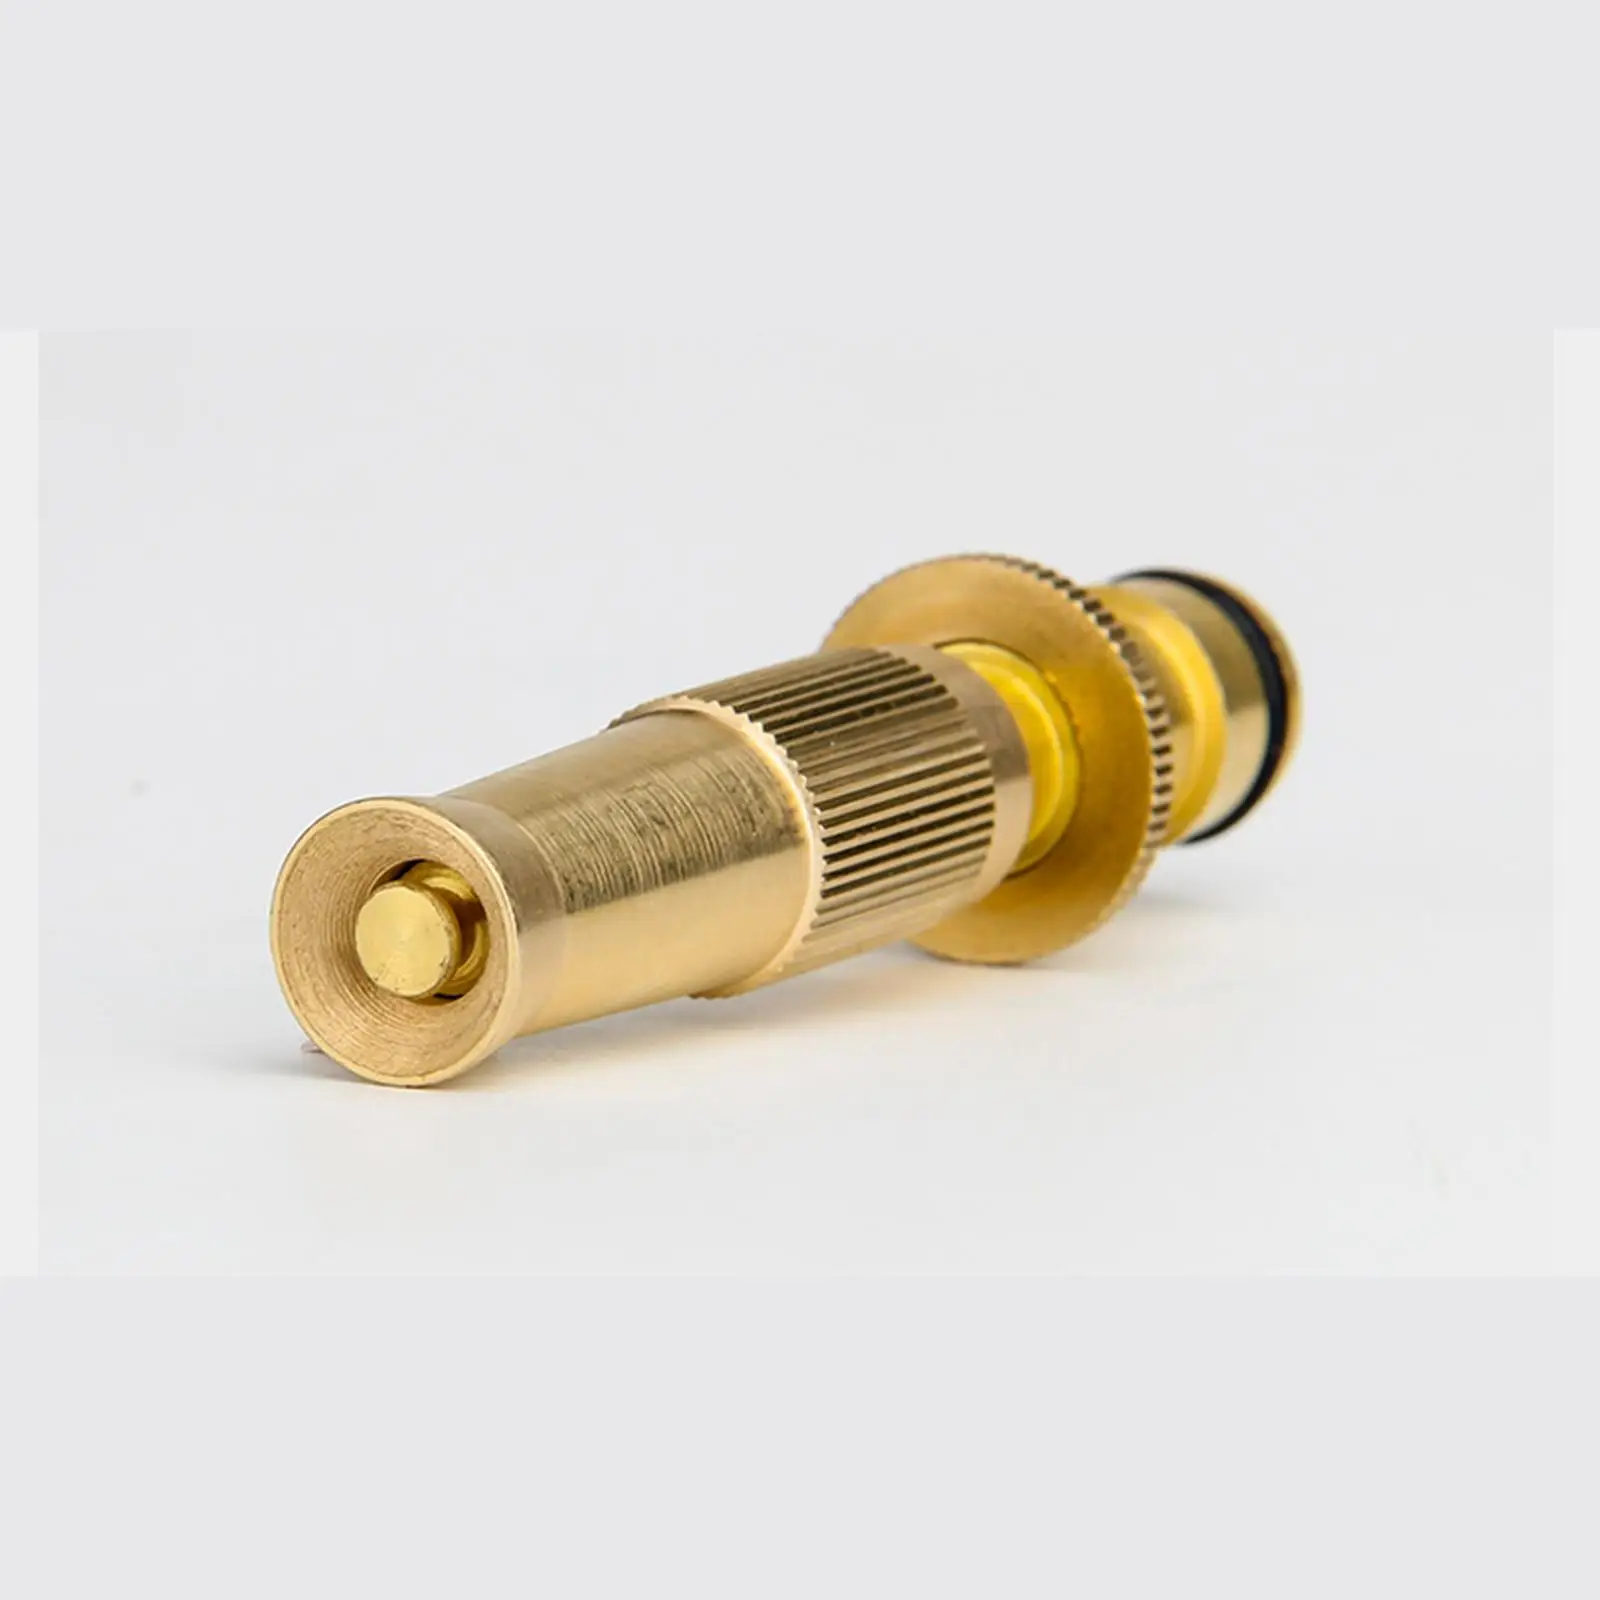 Tap Hosepipe Sprinkler System Tools Adjustable Solid Brass Hose Wand for Car